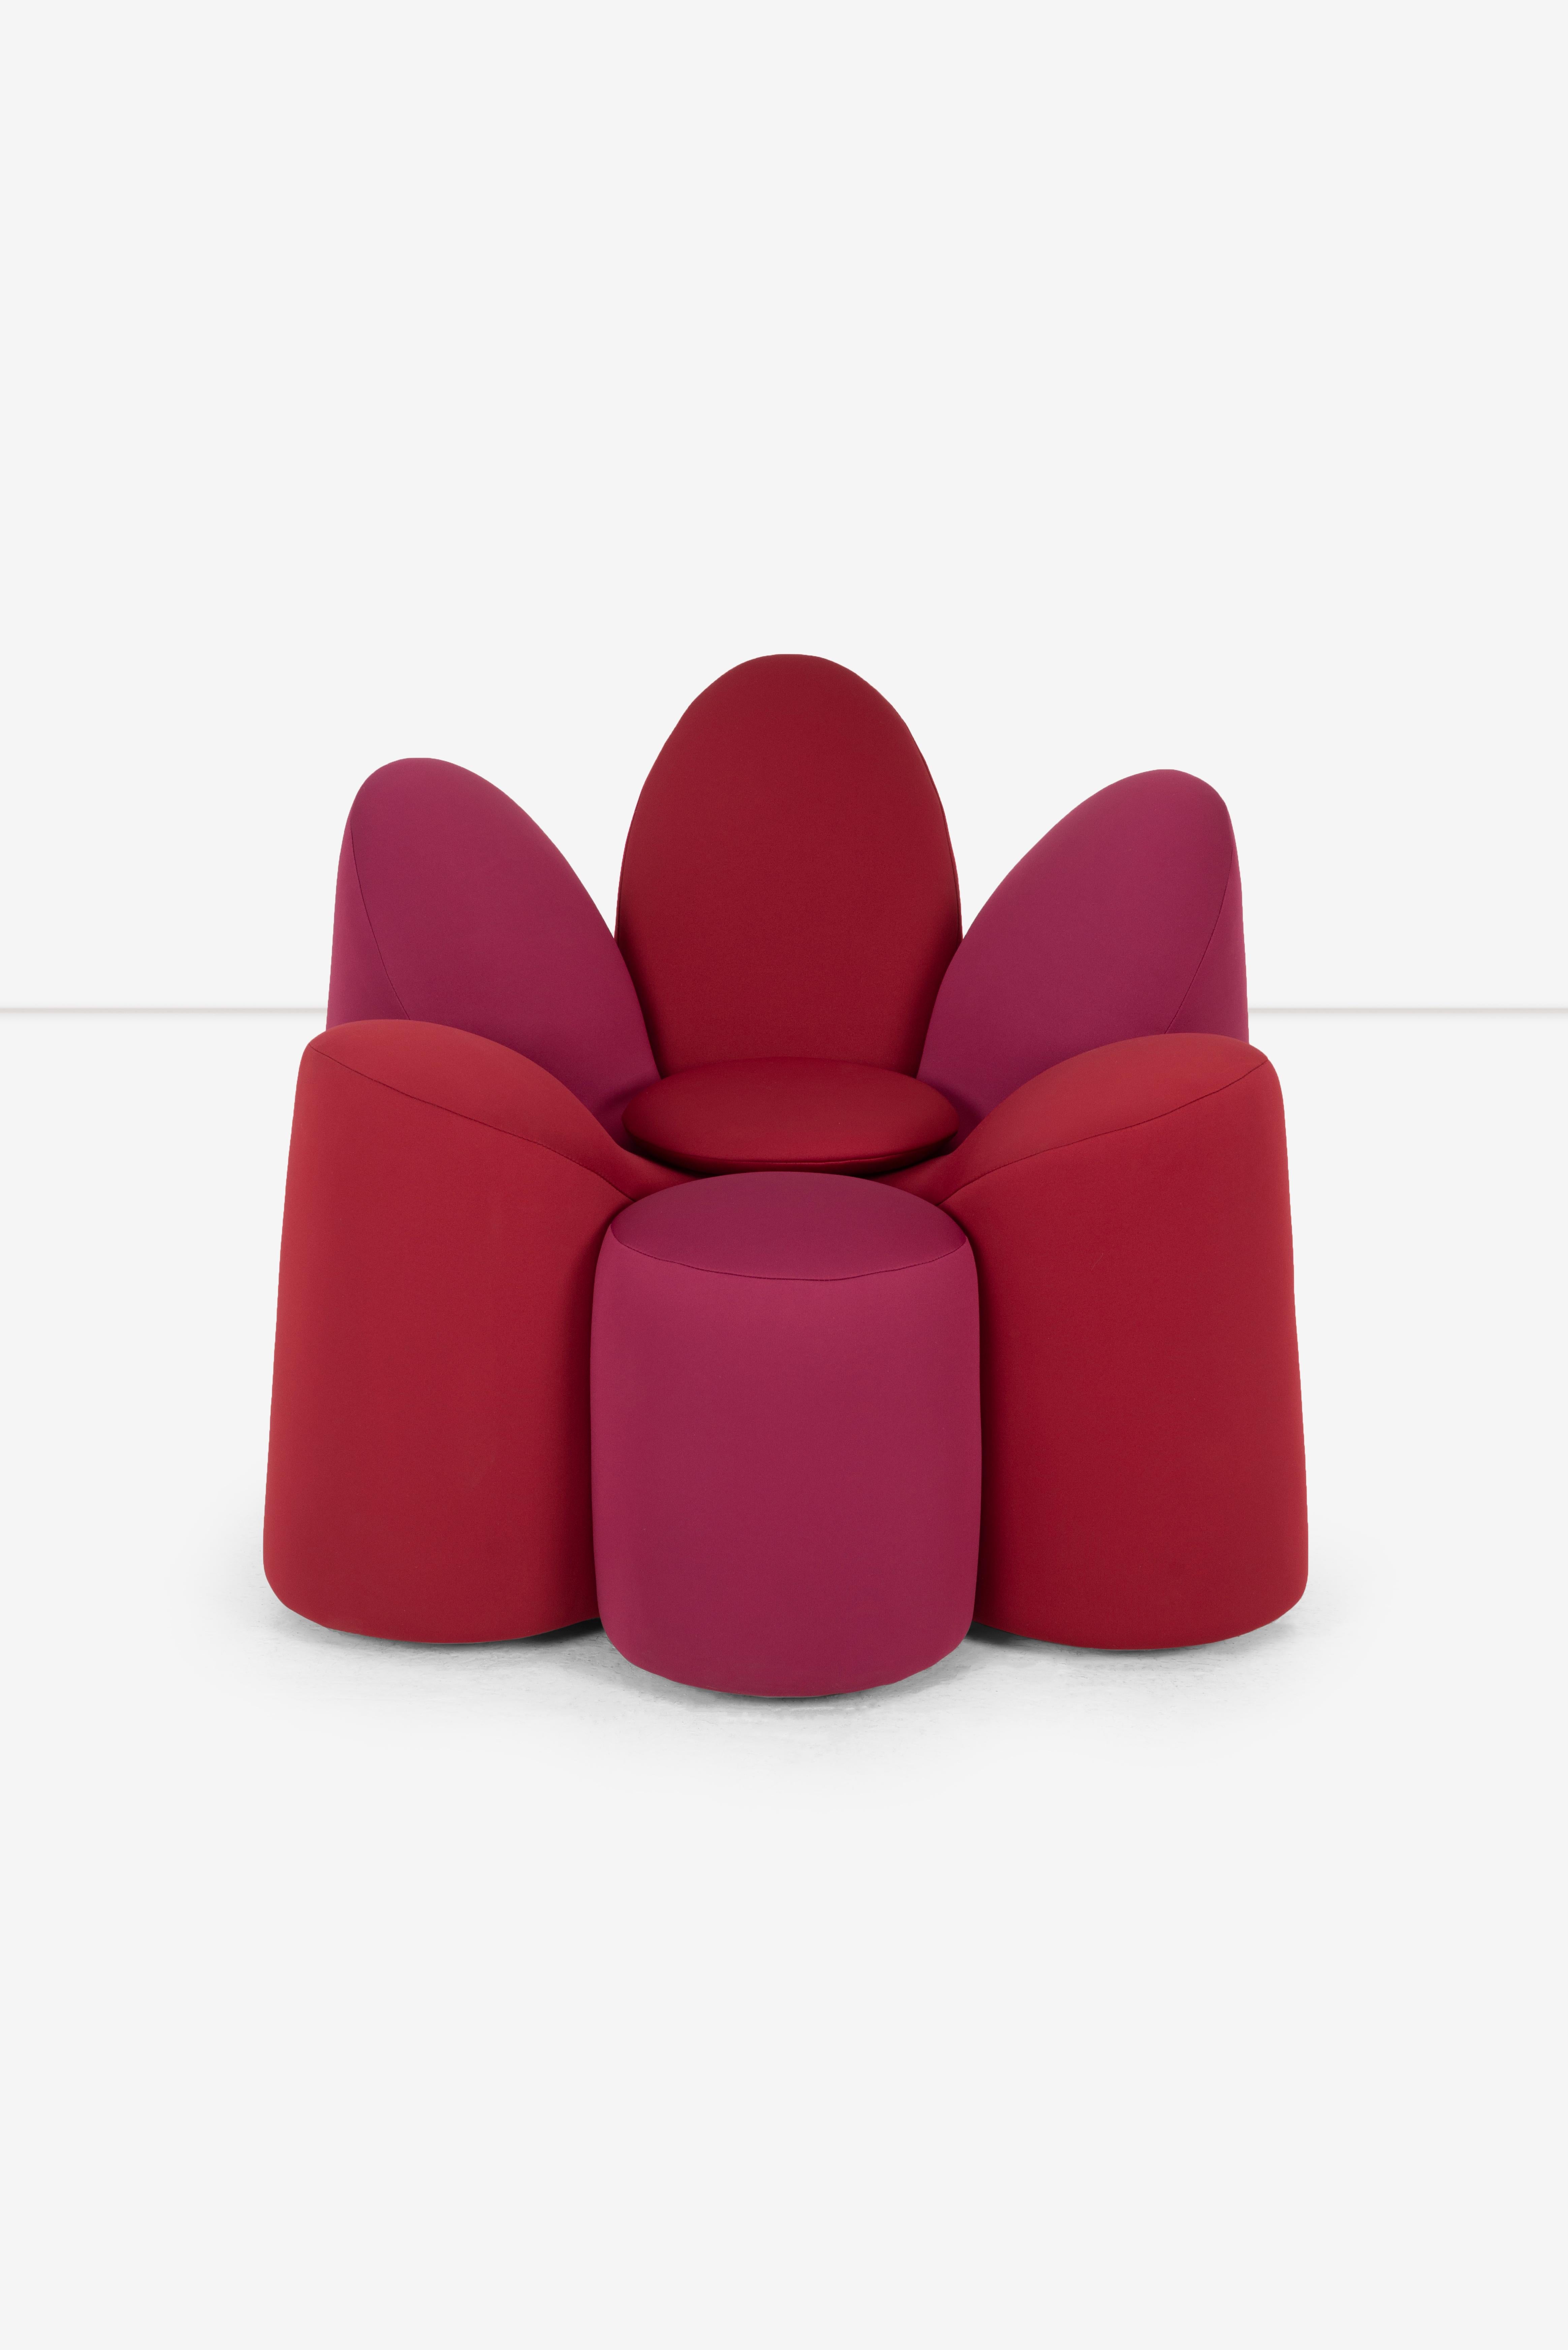 fauteuil fleur roche bobois